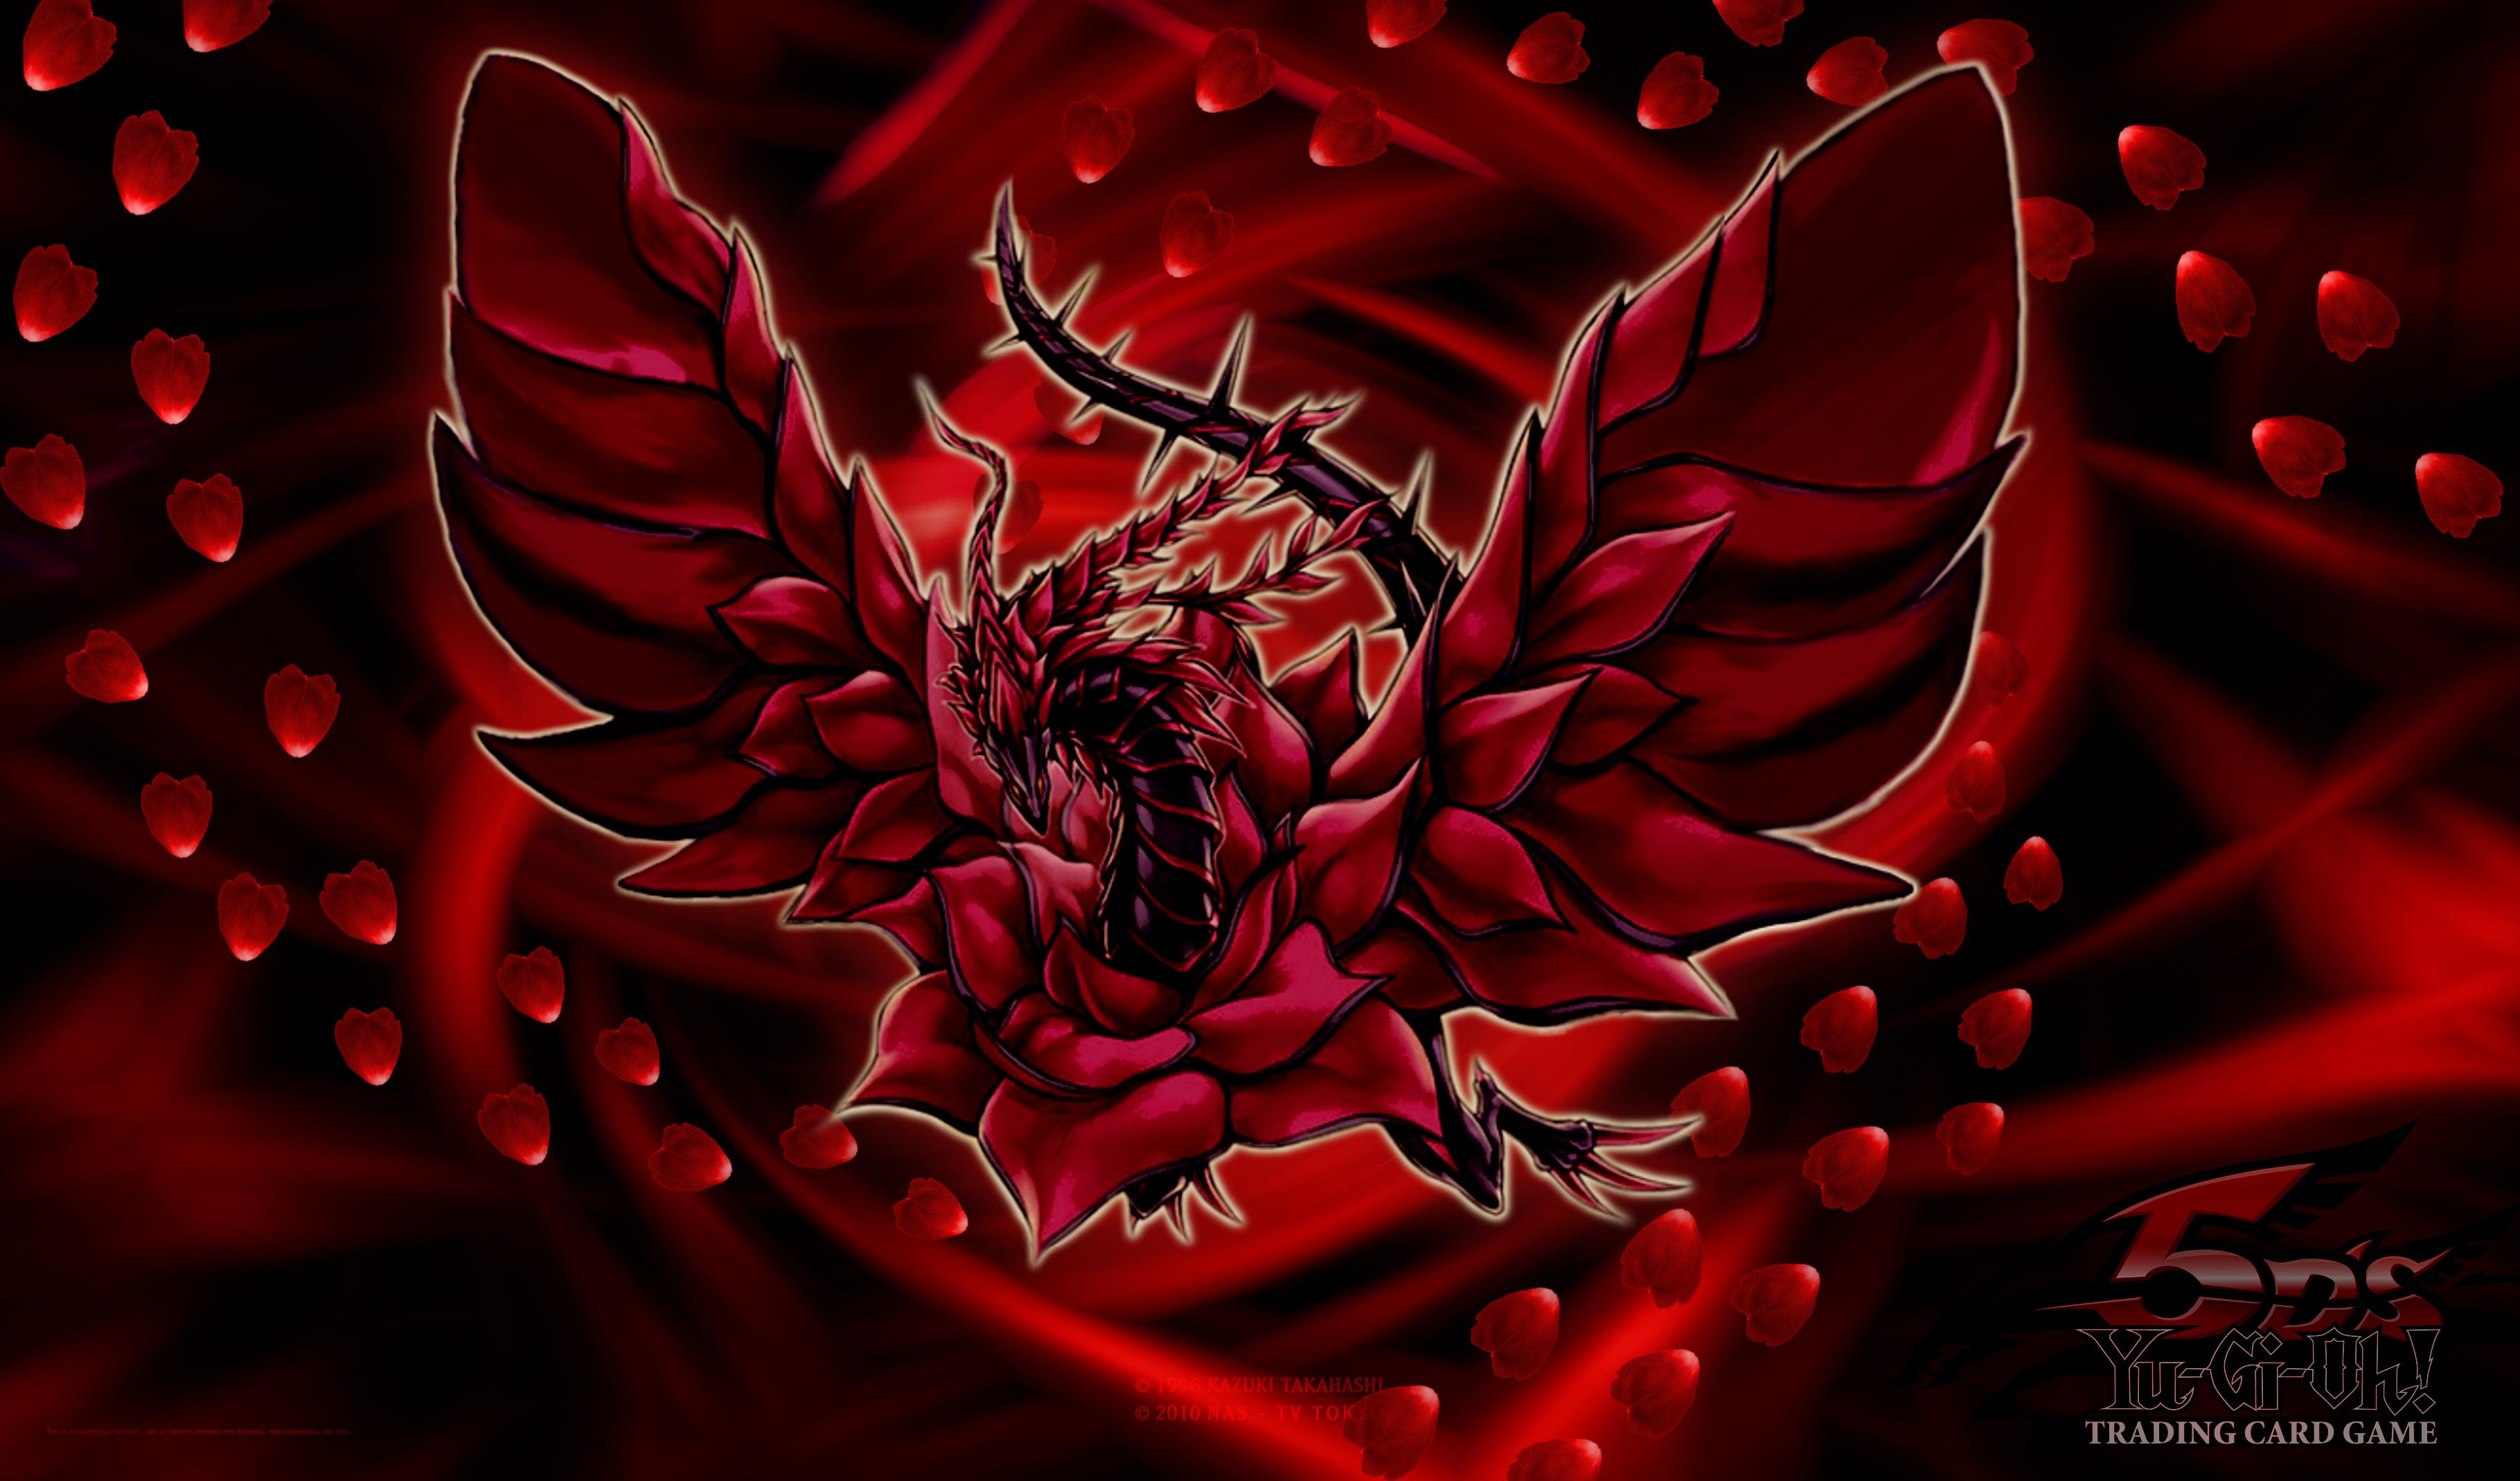 64+] Black Rose Dragon Wallpaper - WallpaperSafari